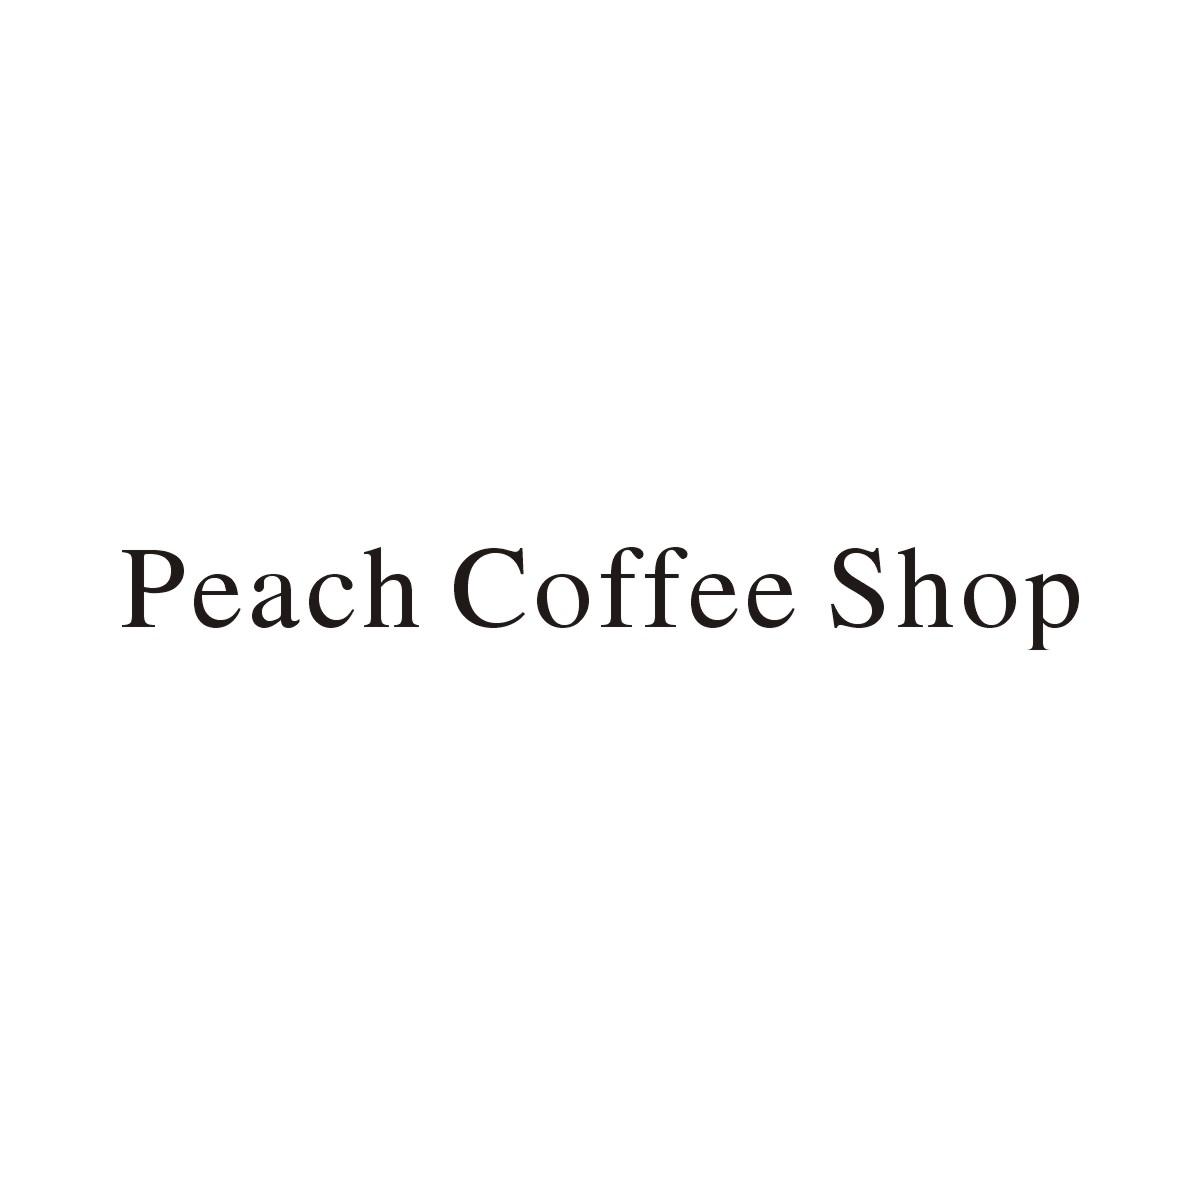 PEACH COFFEE SHOP